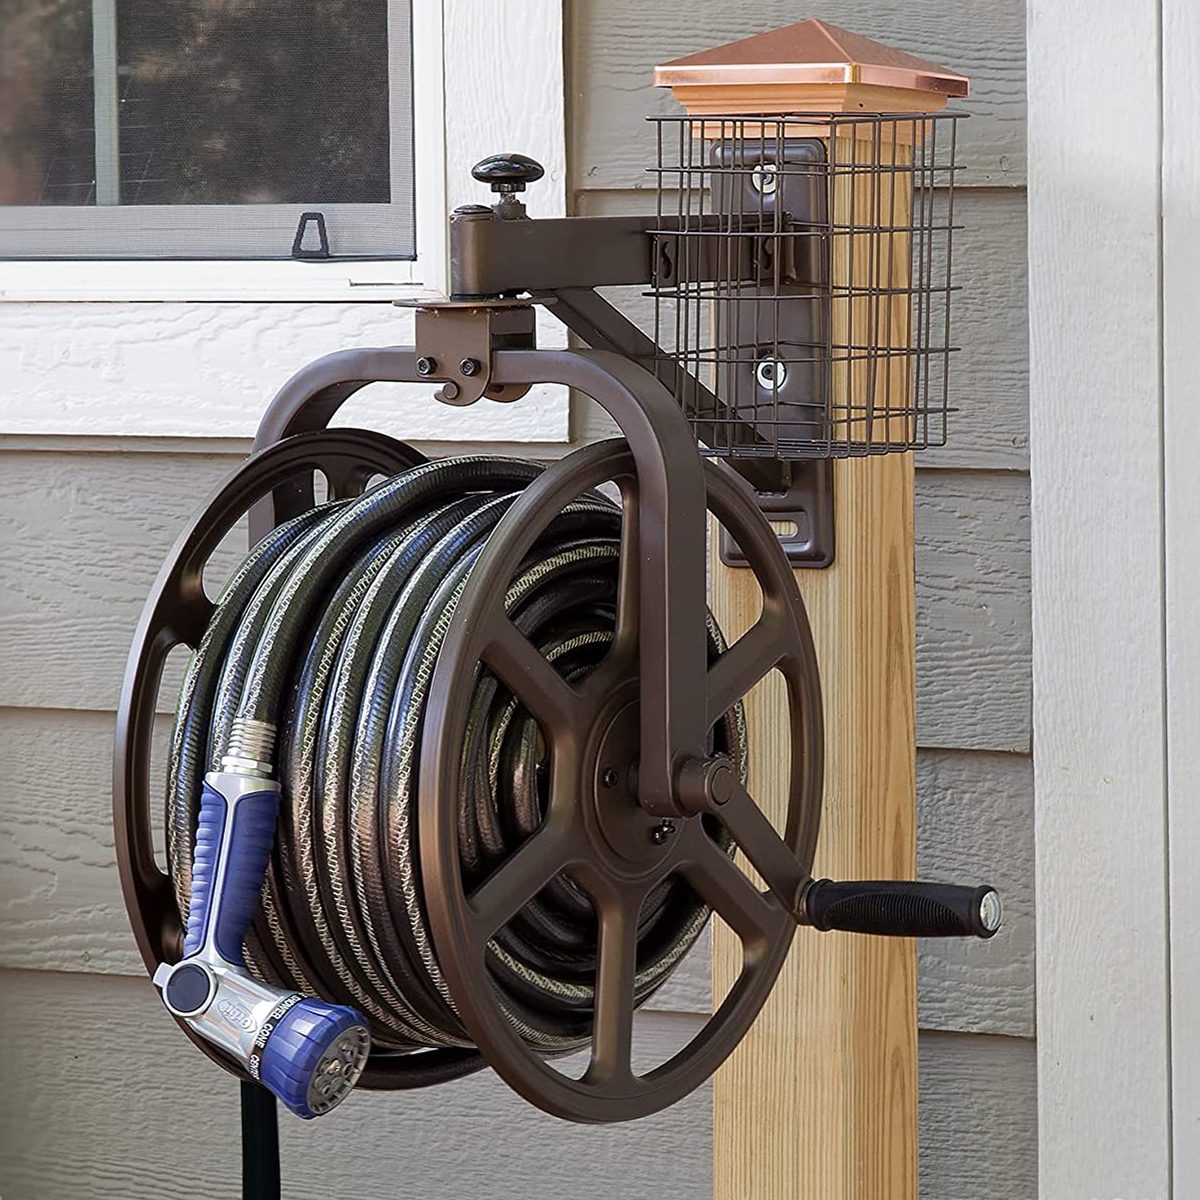 Utility yardworks hose reel cart for Gardens & Irrigation 